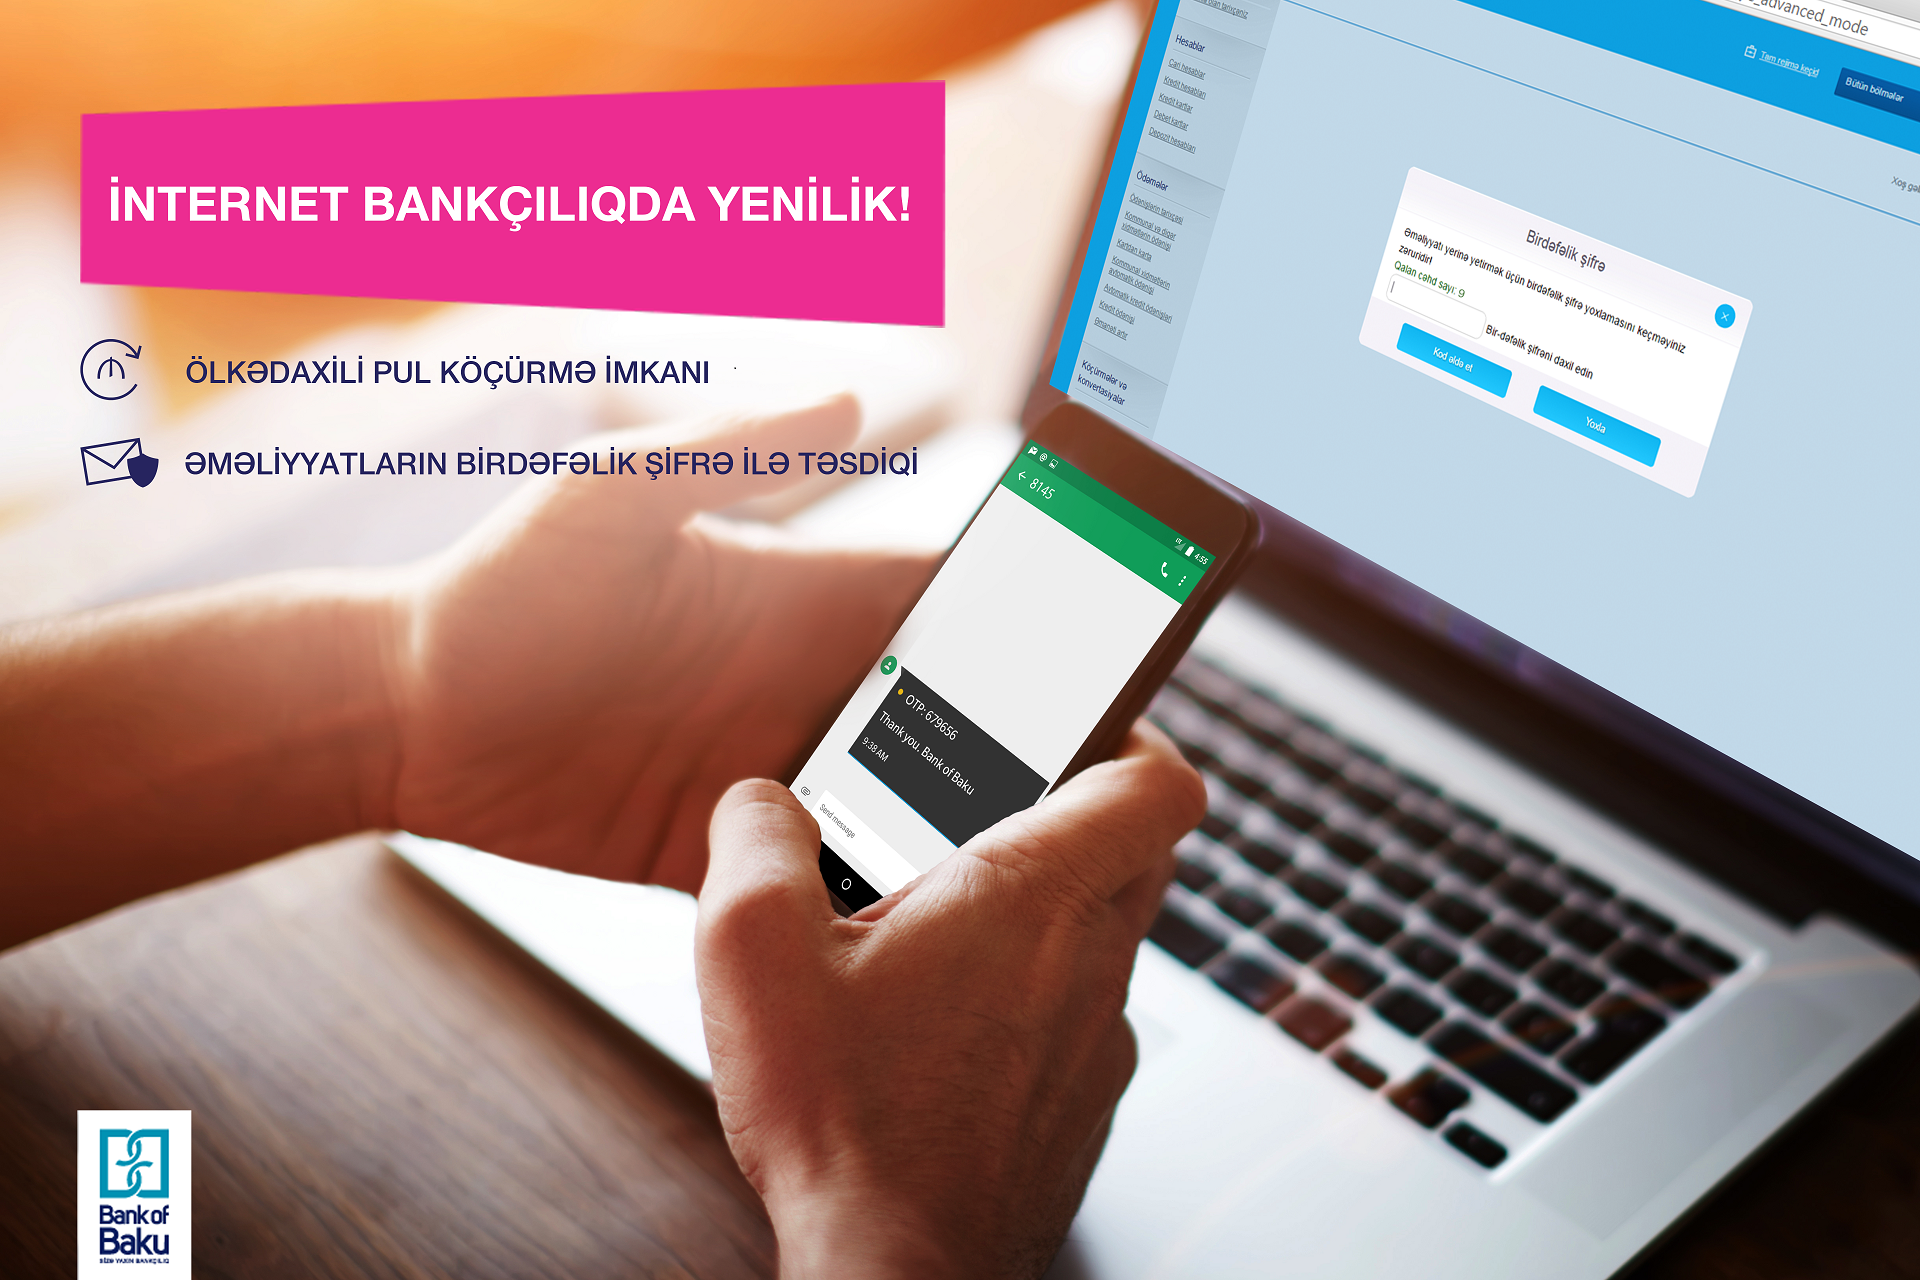 Bank of Baku-nun İnternet Bankçılıq xidmətindən hər kəsi sevindirəcək YENİLİK!